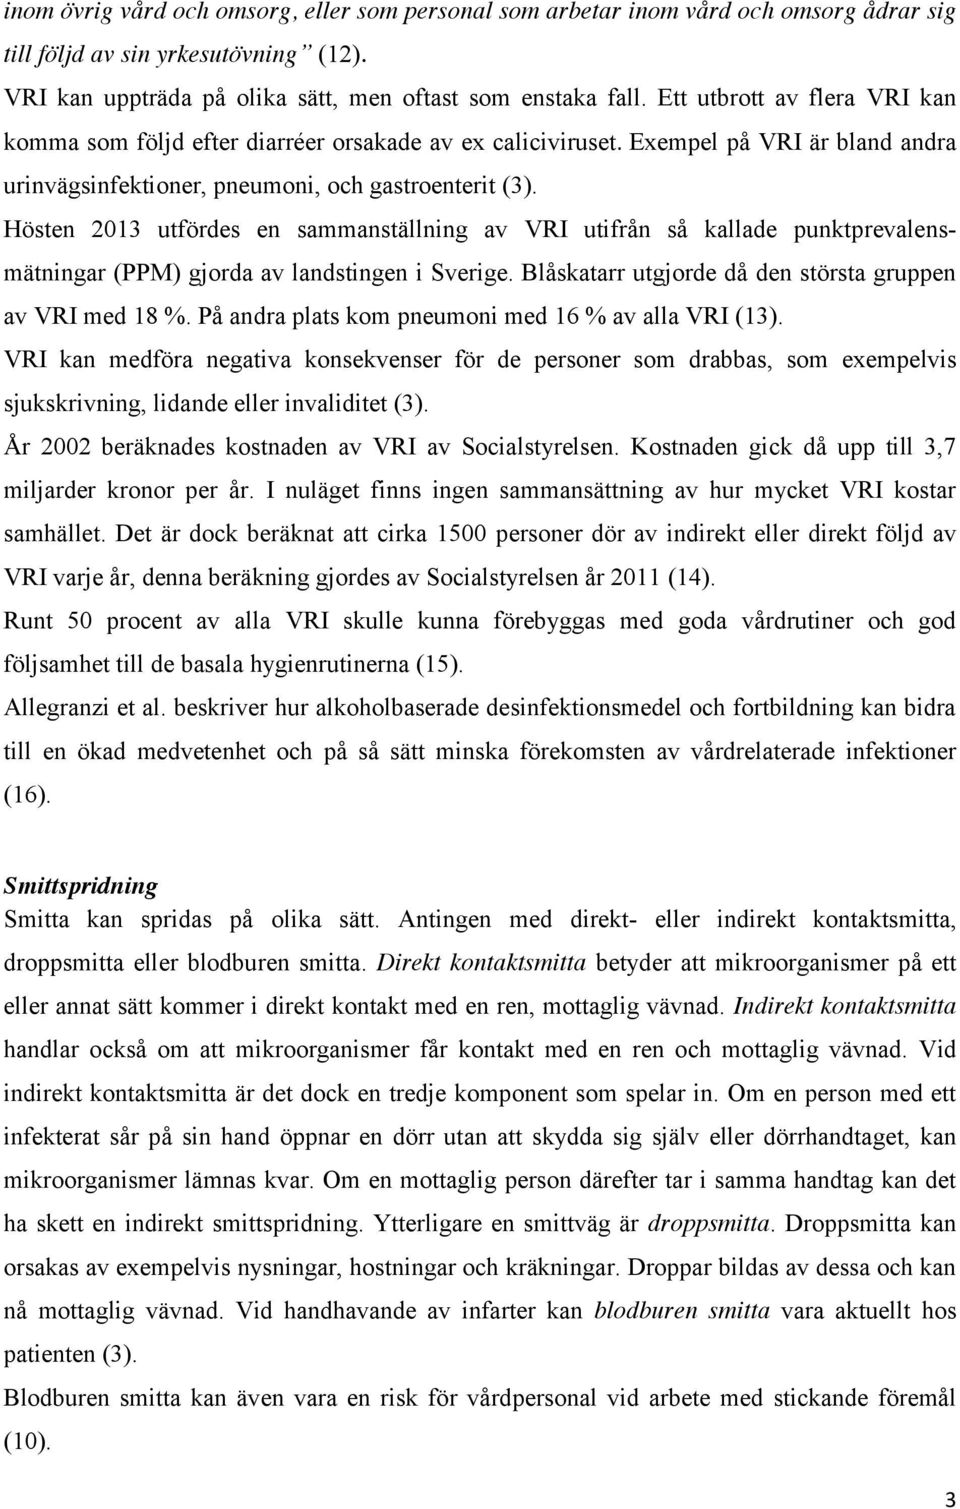 Hösten 2013 utfördes en sammanställning av VRI utifrån så kallade punktprevalensmätningar (PPM) gjorda av landstingen i Sverige. Blåskatarr utgjorde då den största gruppen av VRI med 18 %.